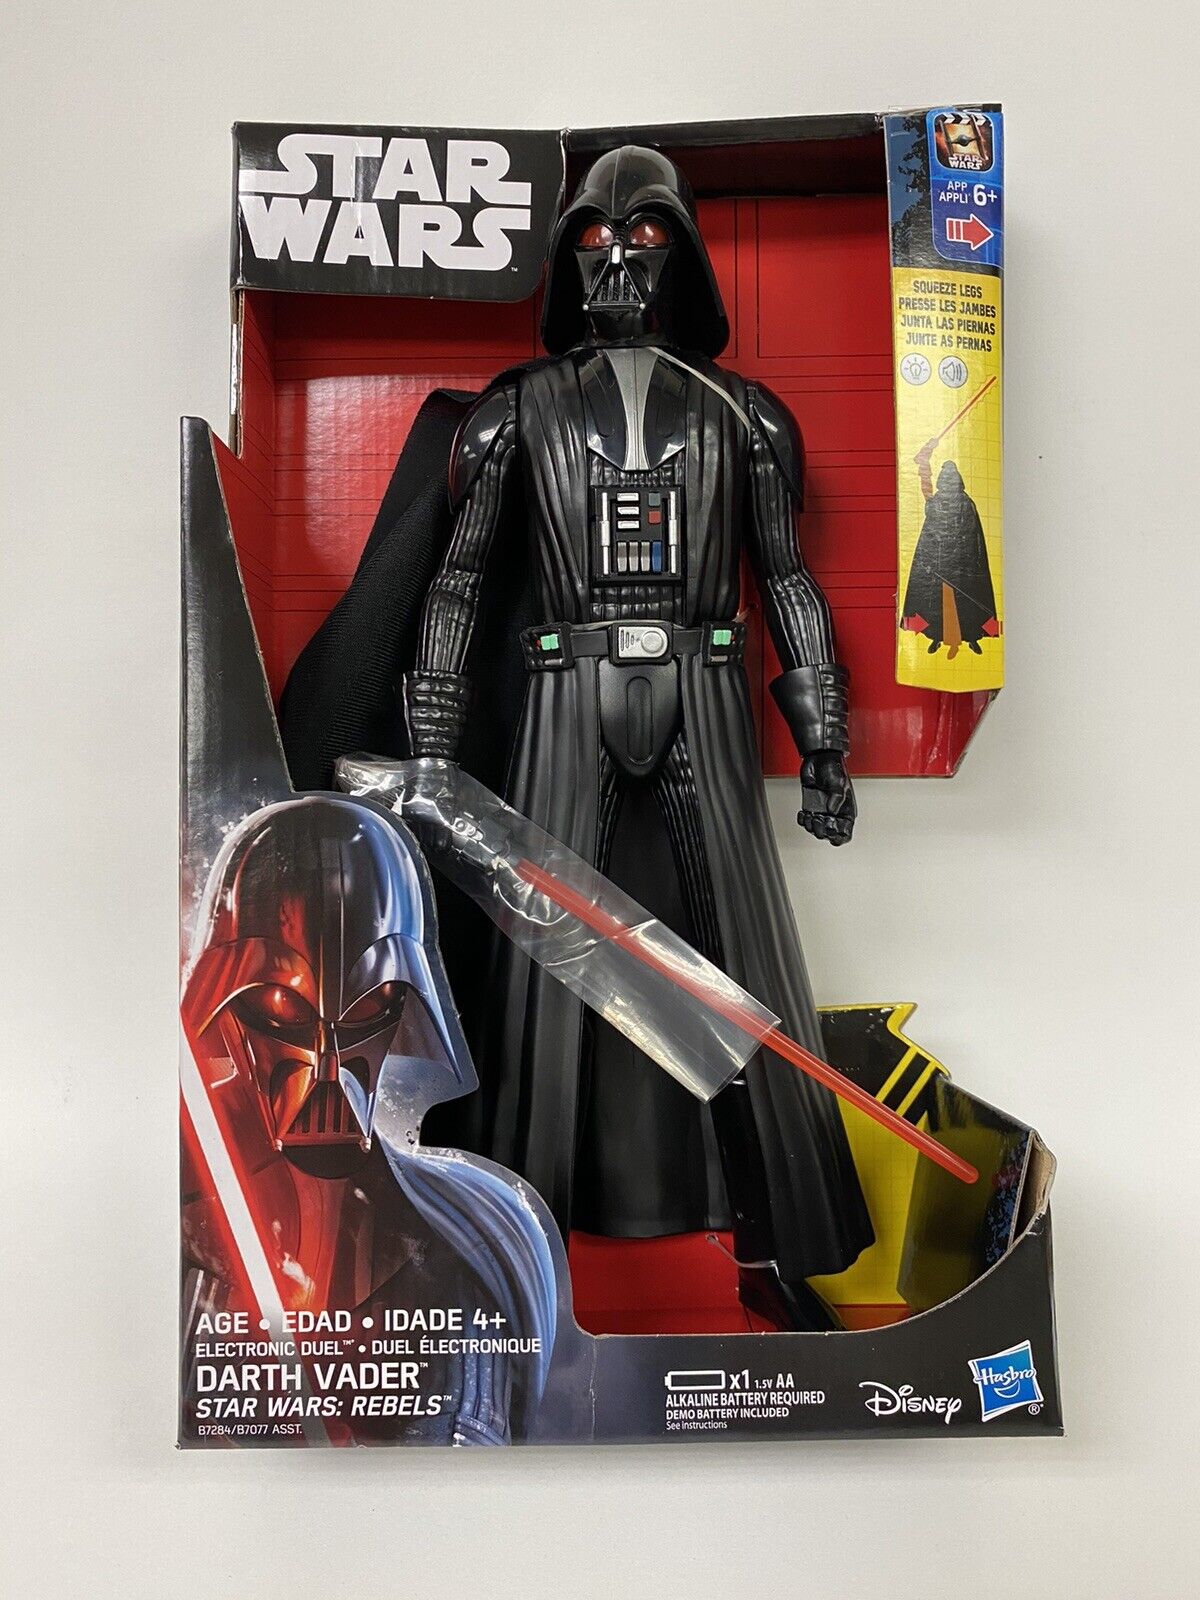 Star Wars Rebels Electronic Duel Darth Vader 12-Inch Action Figure Lightsaber Hasbro